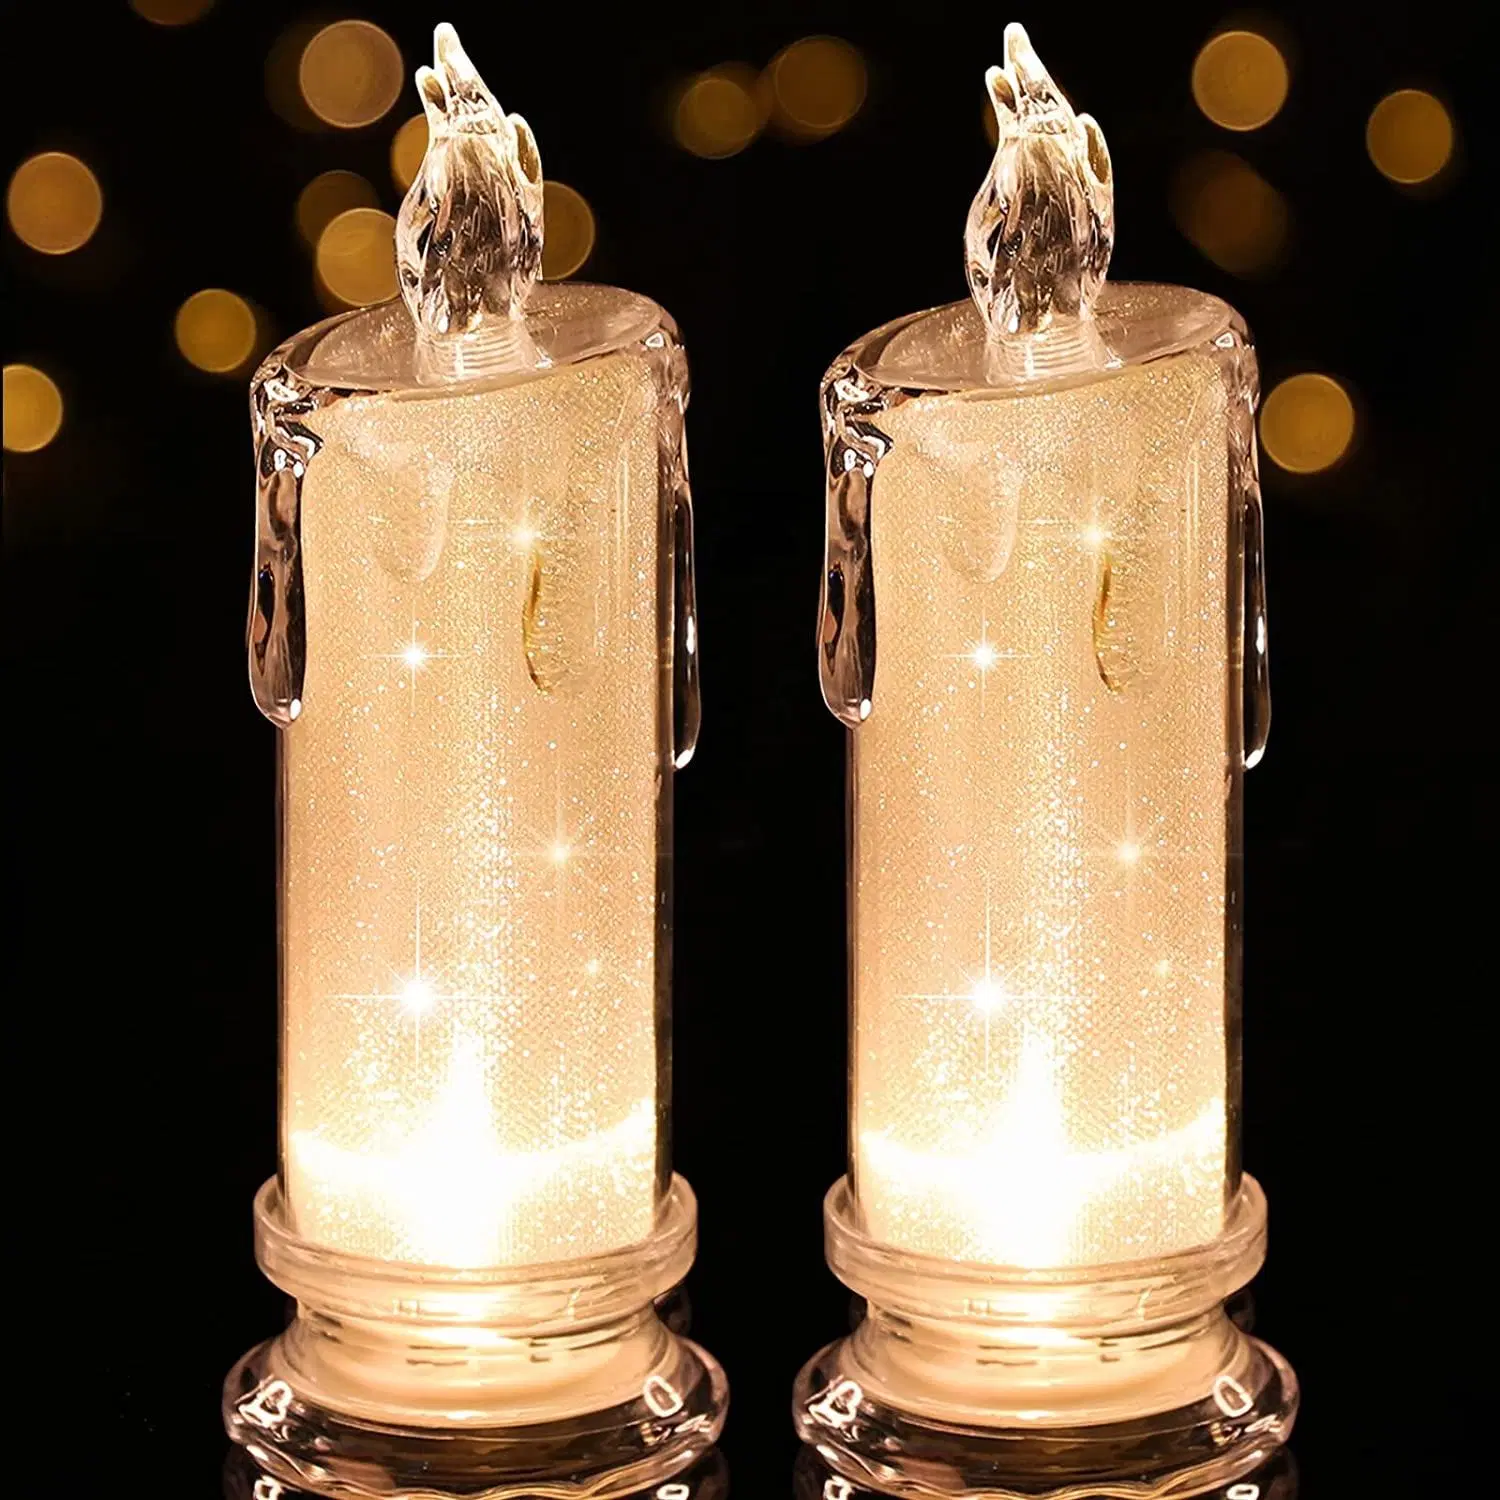 Светодиодные свечи мерцание светодиодная стойка свечи свечи свечи работают от батареи свечи Для вечерних свадебных торжеств